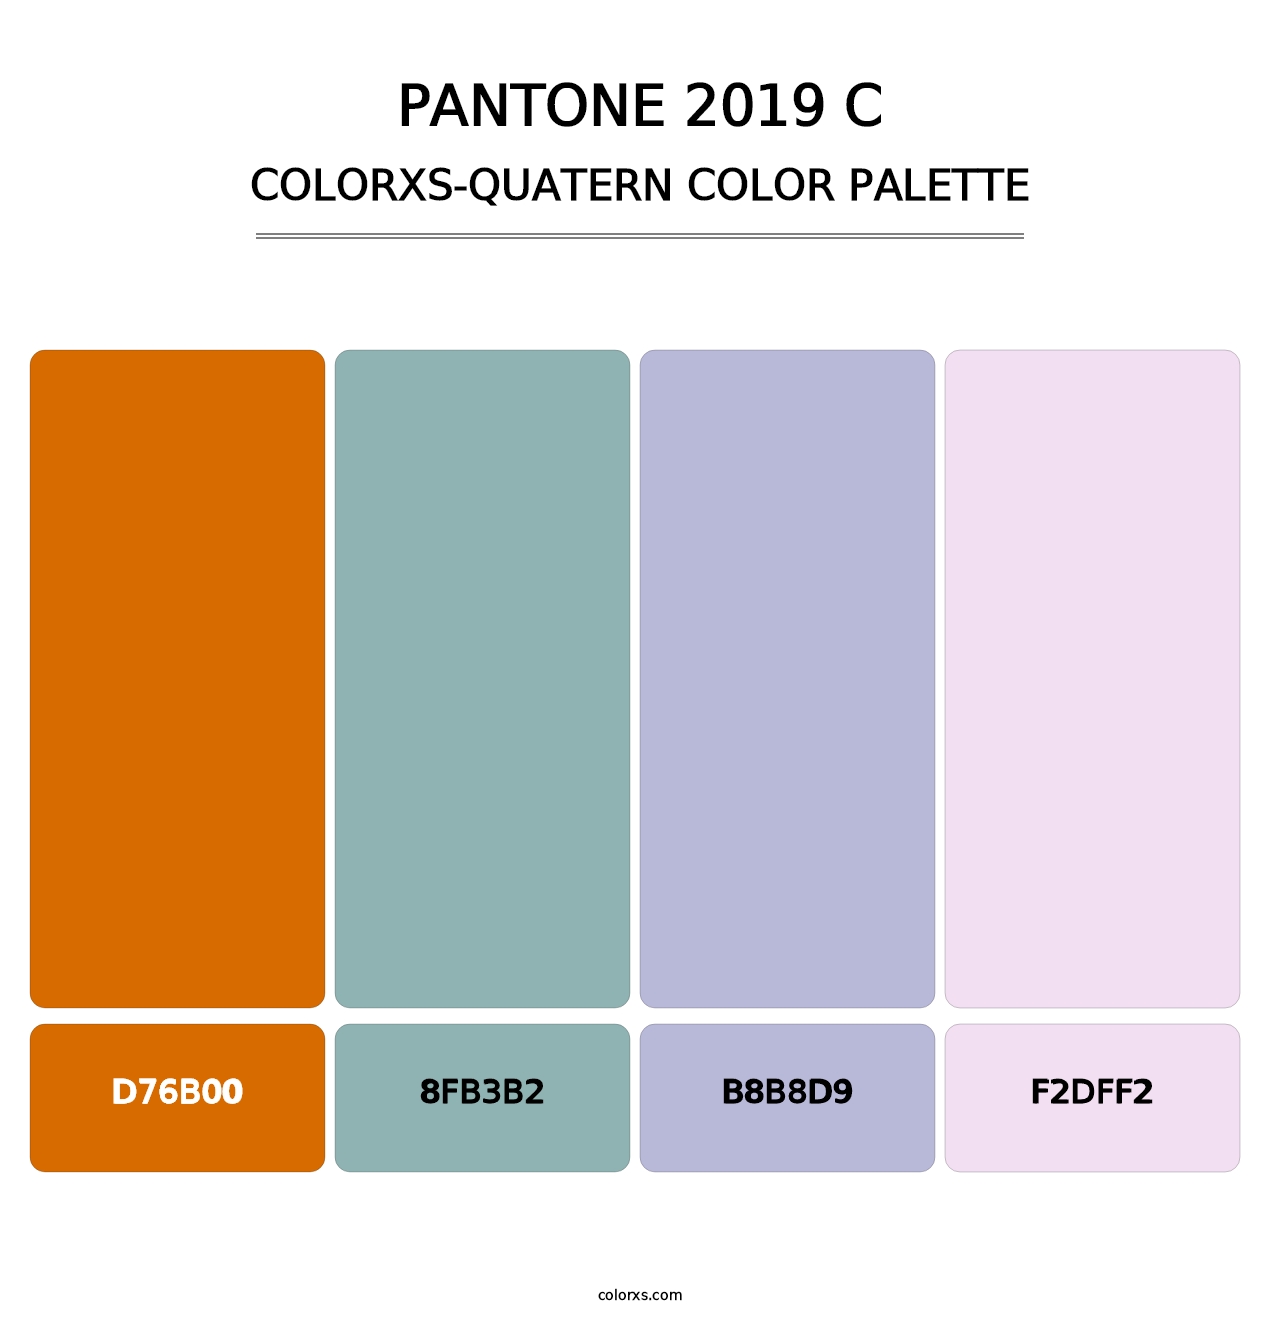 PANTONE 2019 C - Colorxs Quatern Palette